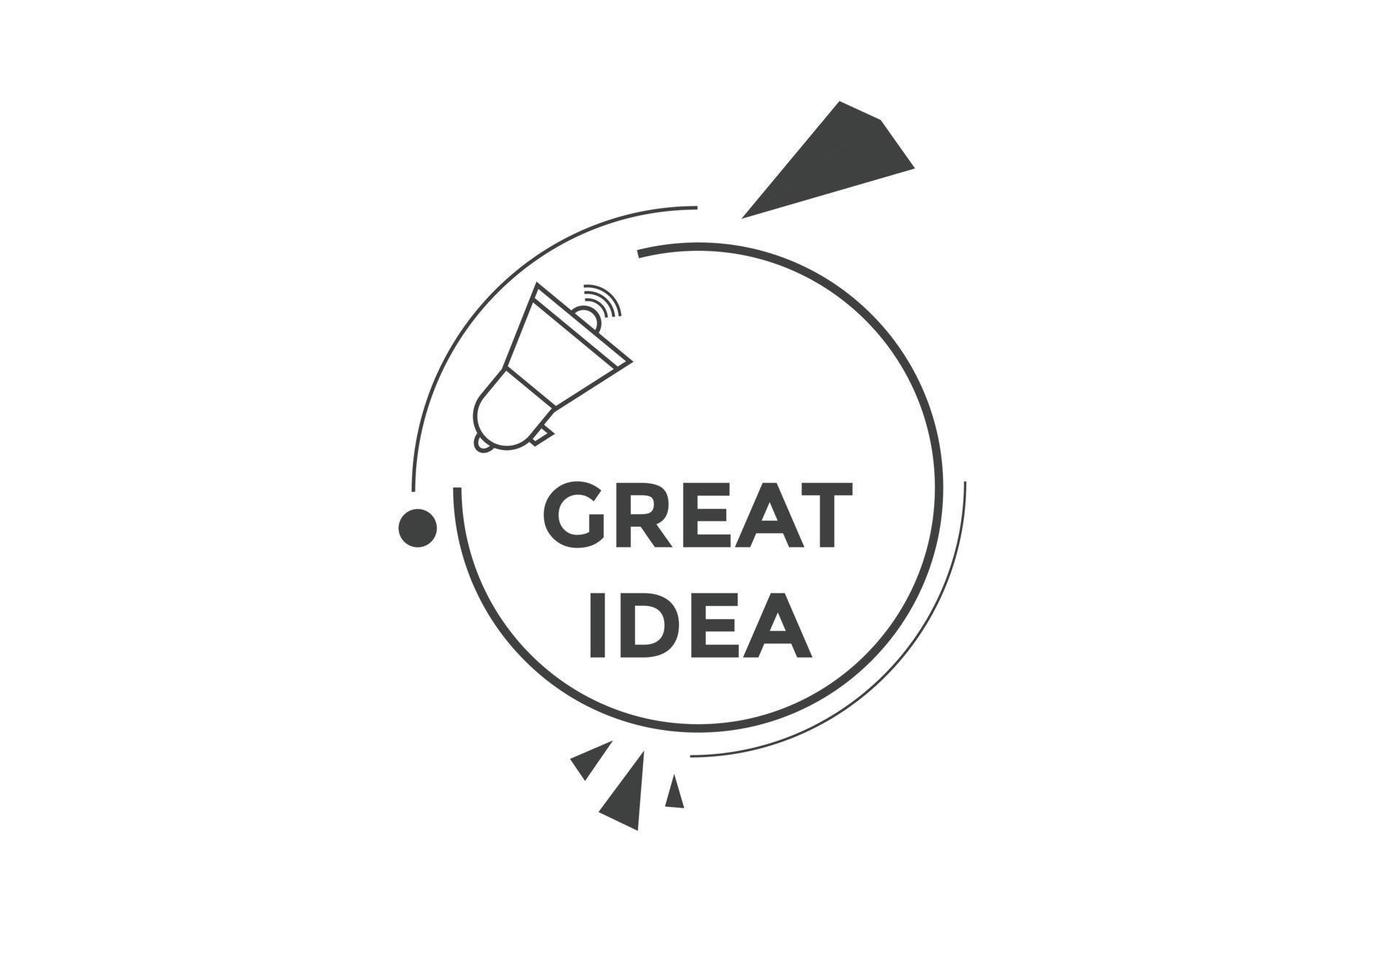 botón de texto de gran idea. burbuja de discurso de gran idea. ilustración de vector de plantilla web de texto de gran idea.